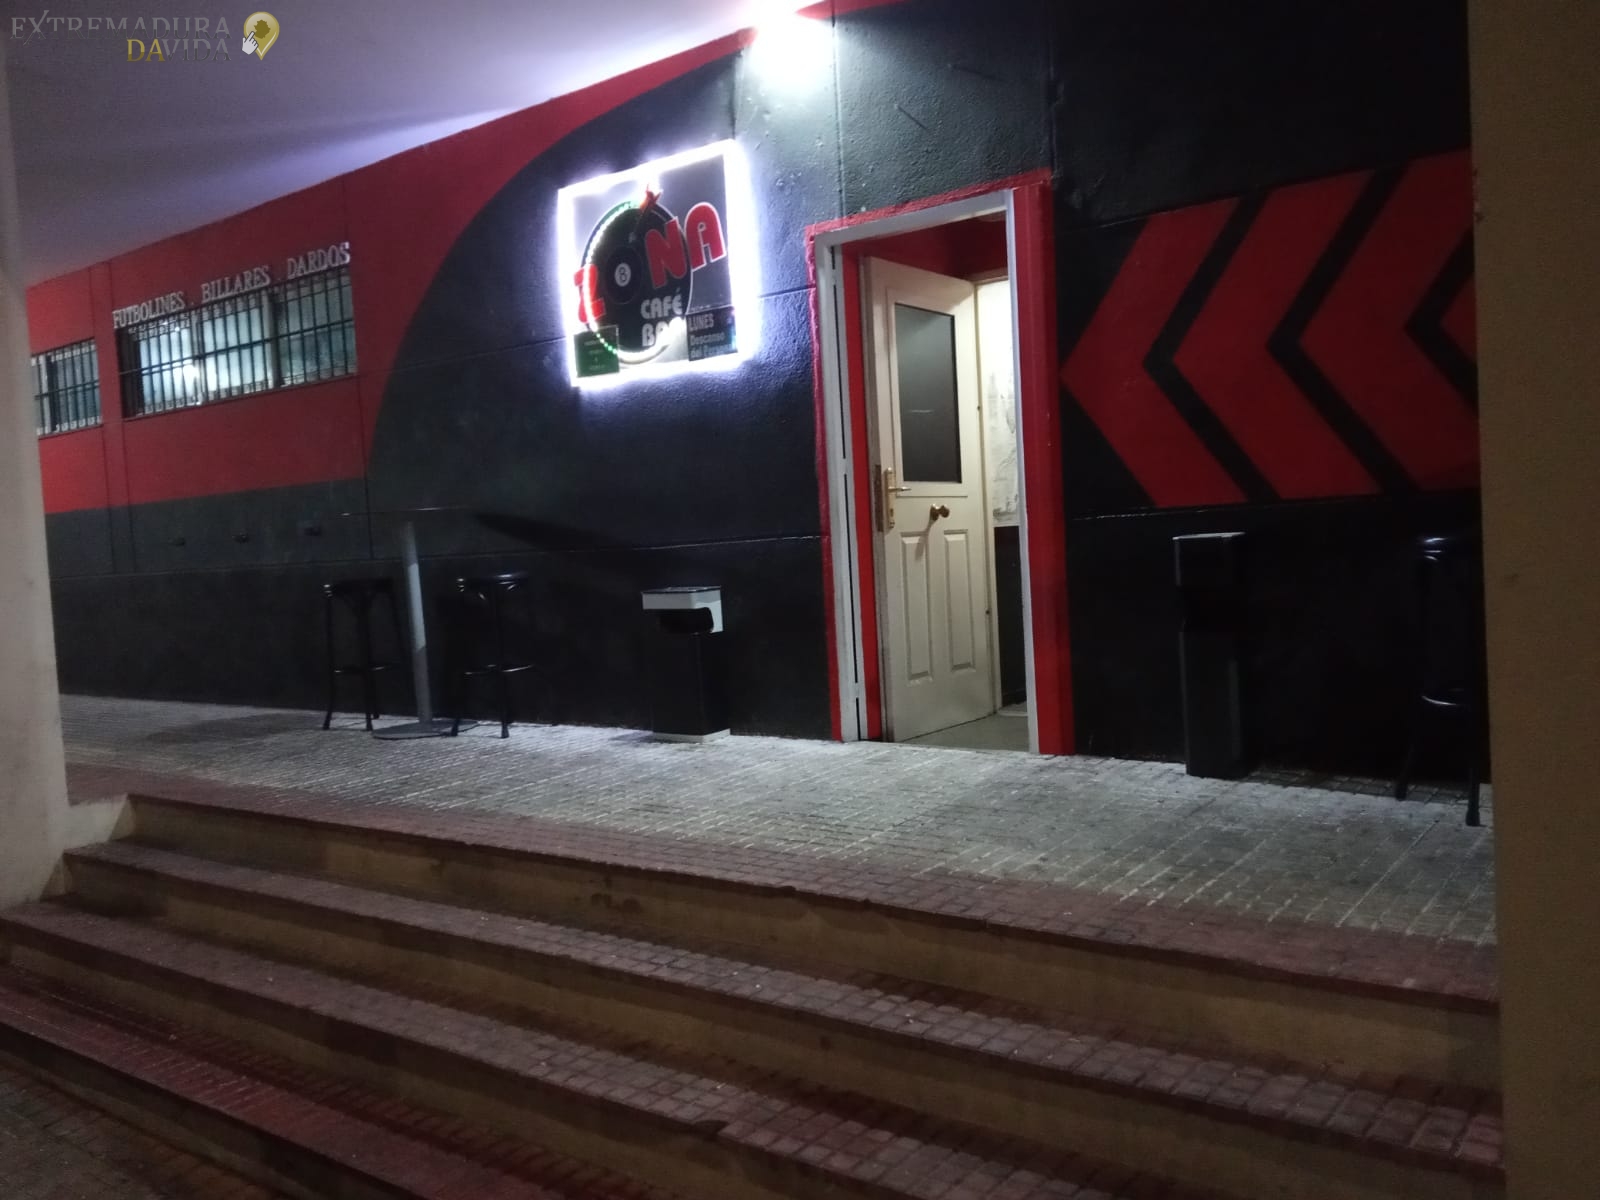 Bar de billares y futbolines en Cáceres Zona